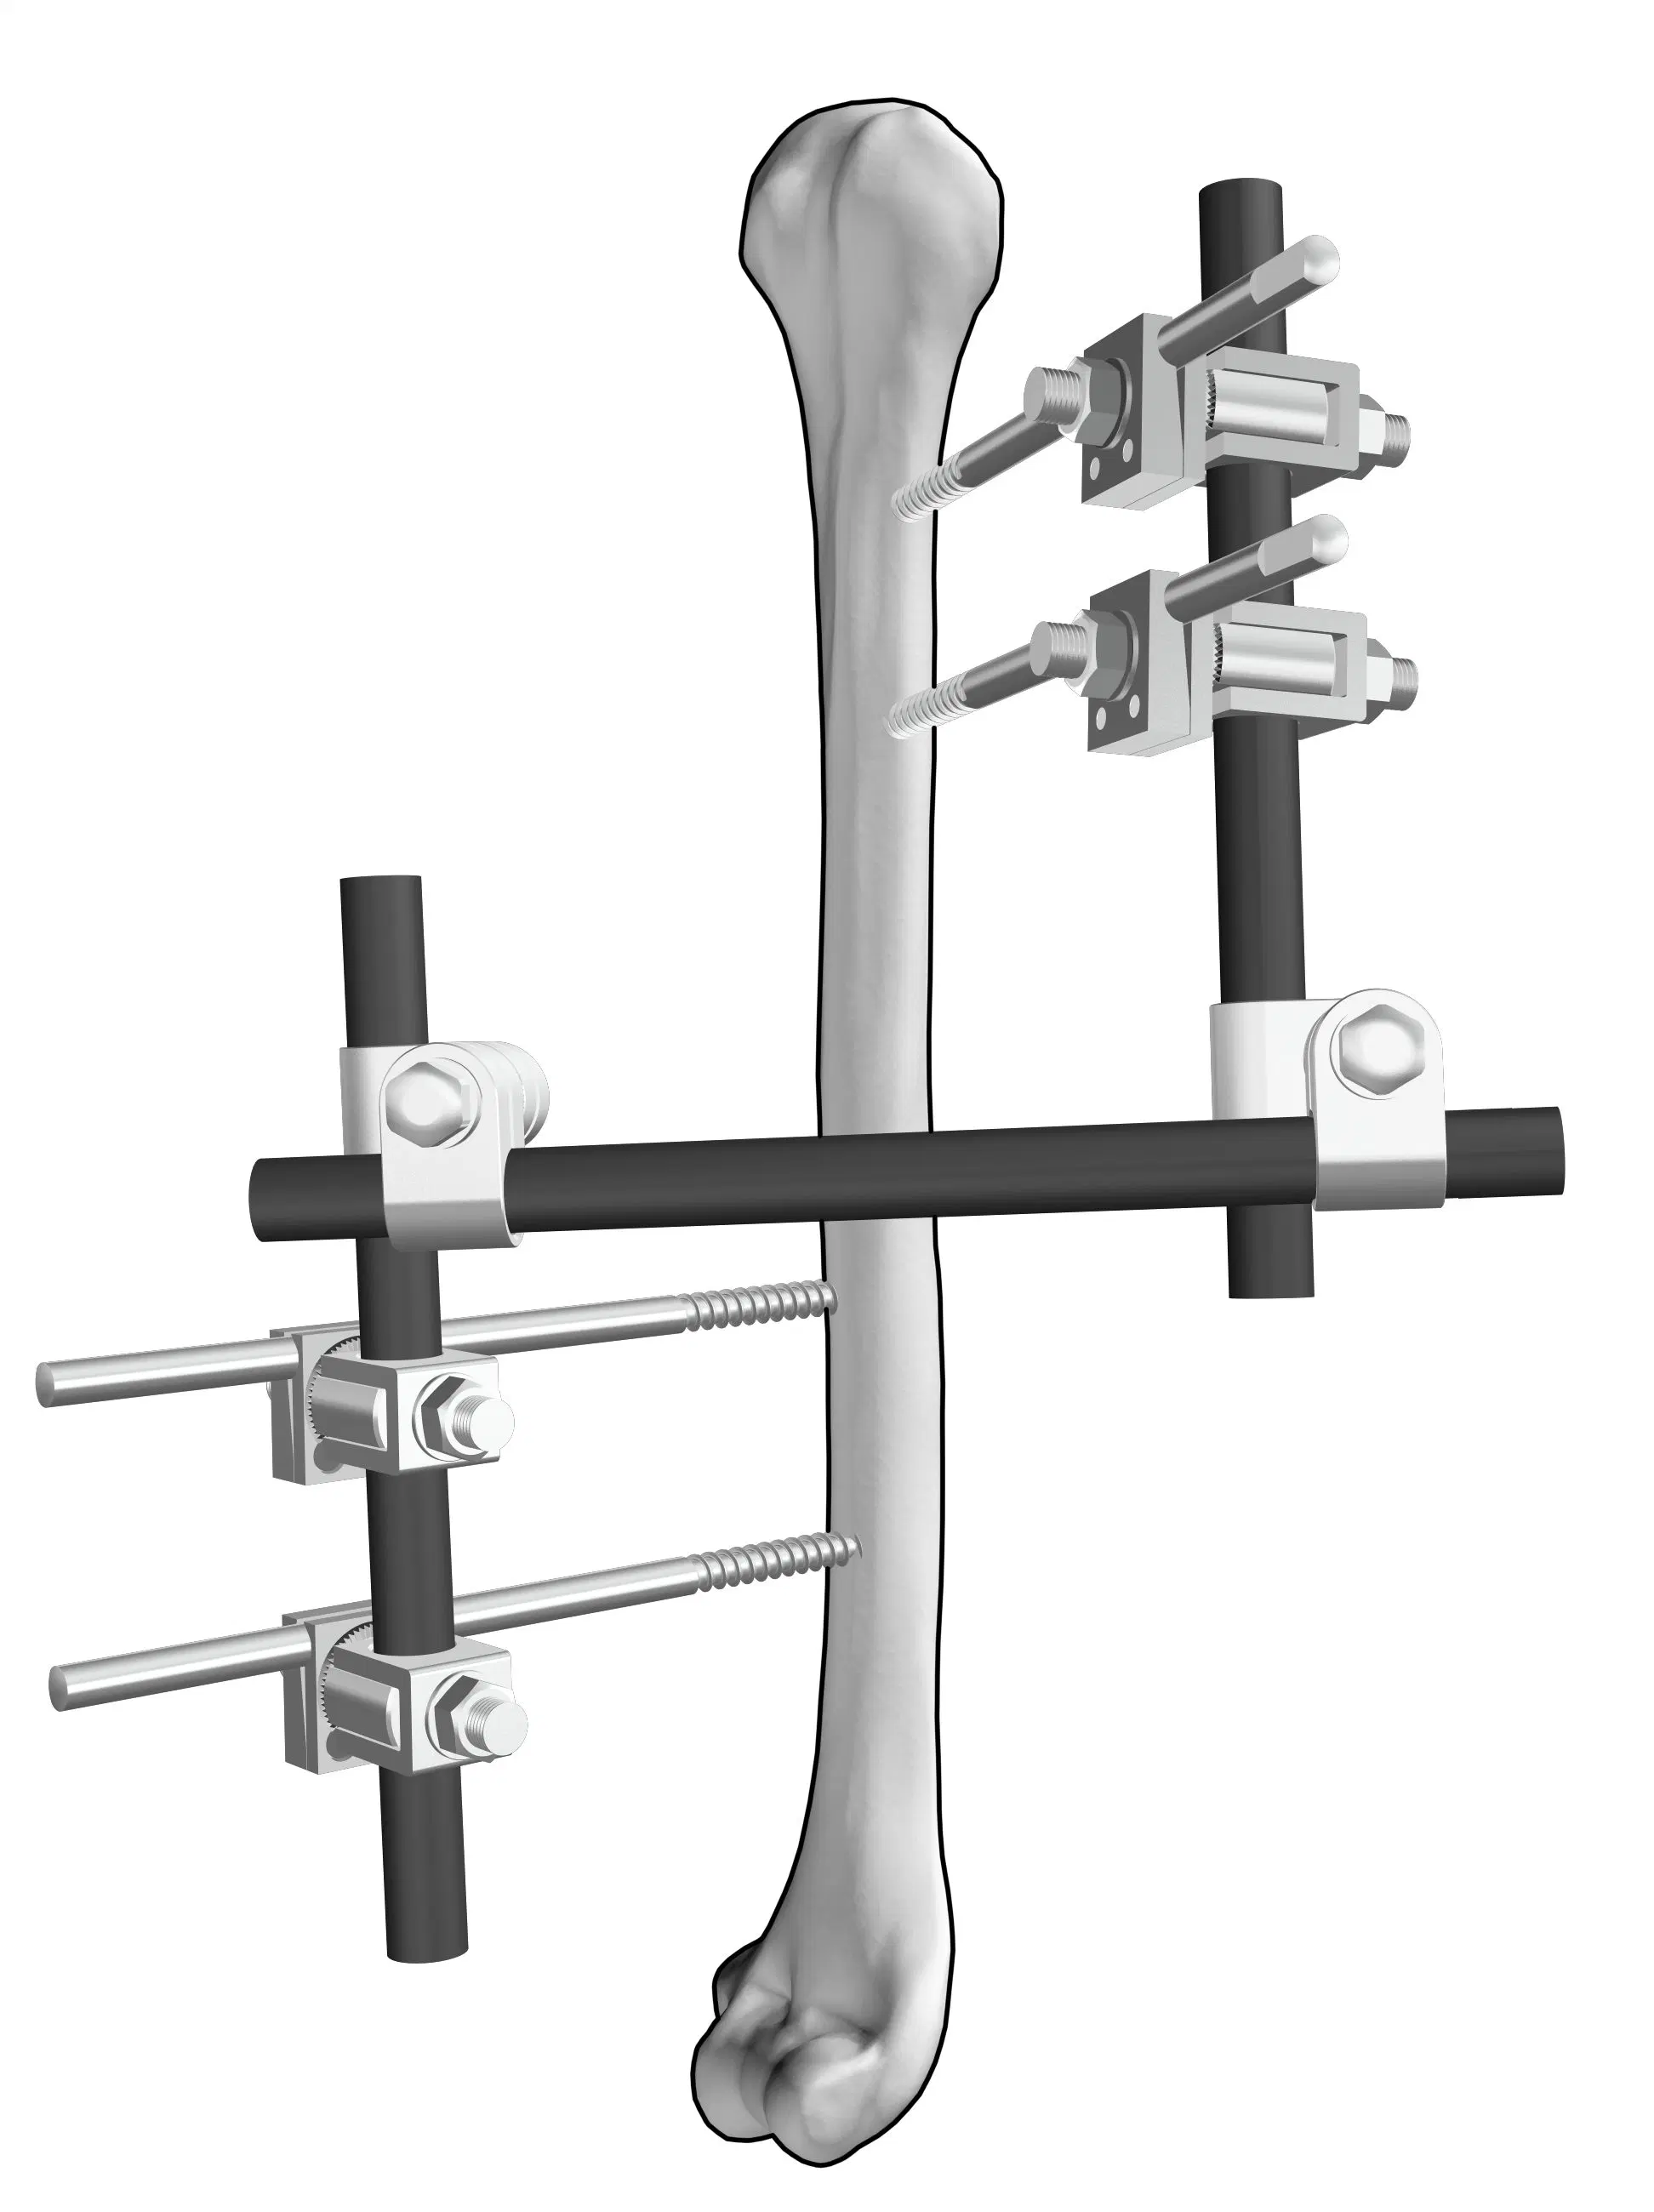 Sistema de fijación externa ortopédico de la disección II húmero la fijación externa